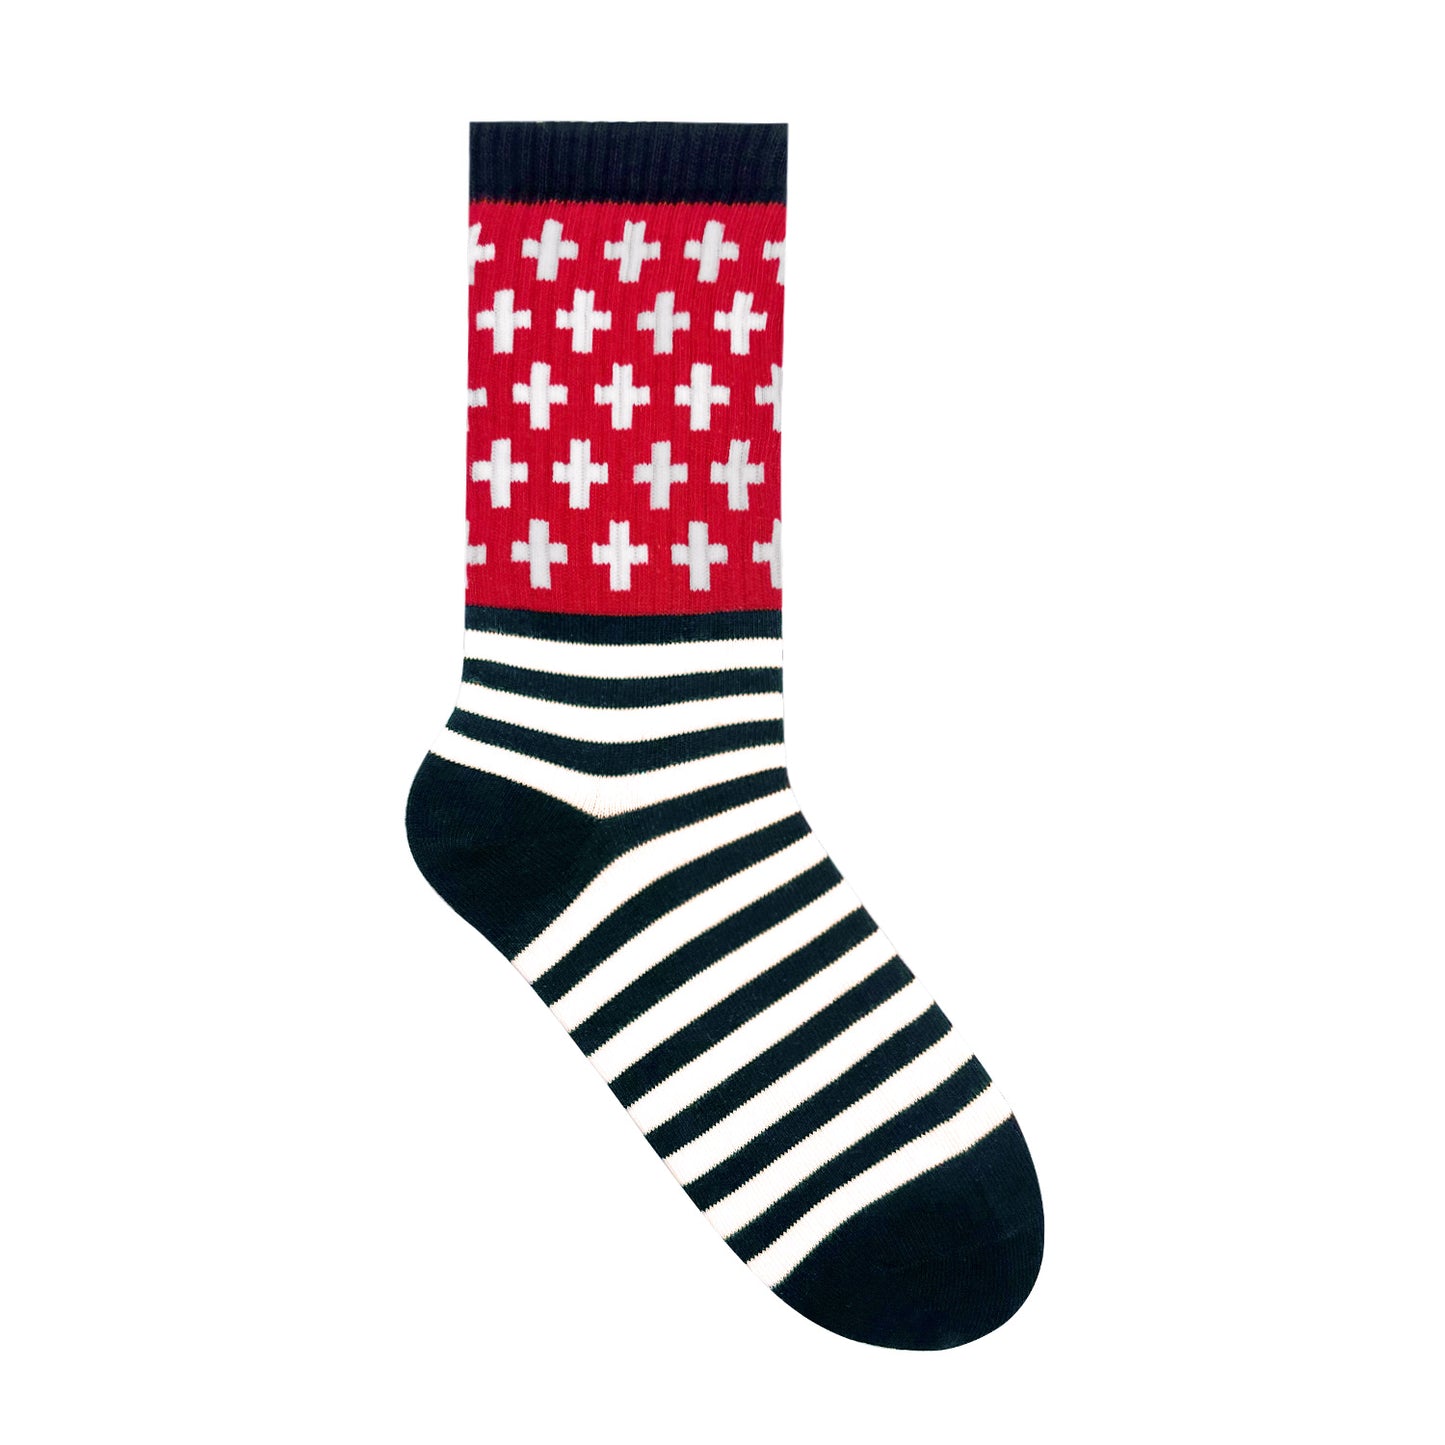 Men's Crew American Flag Socks